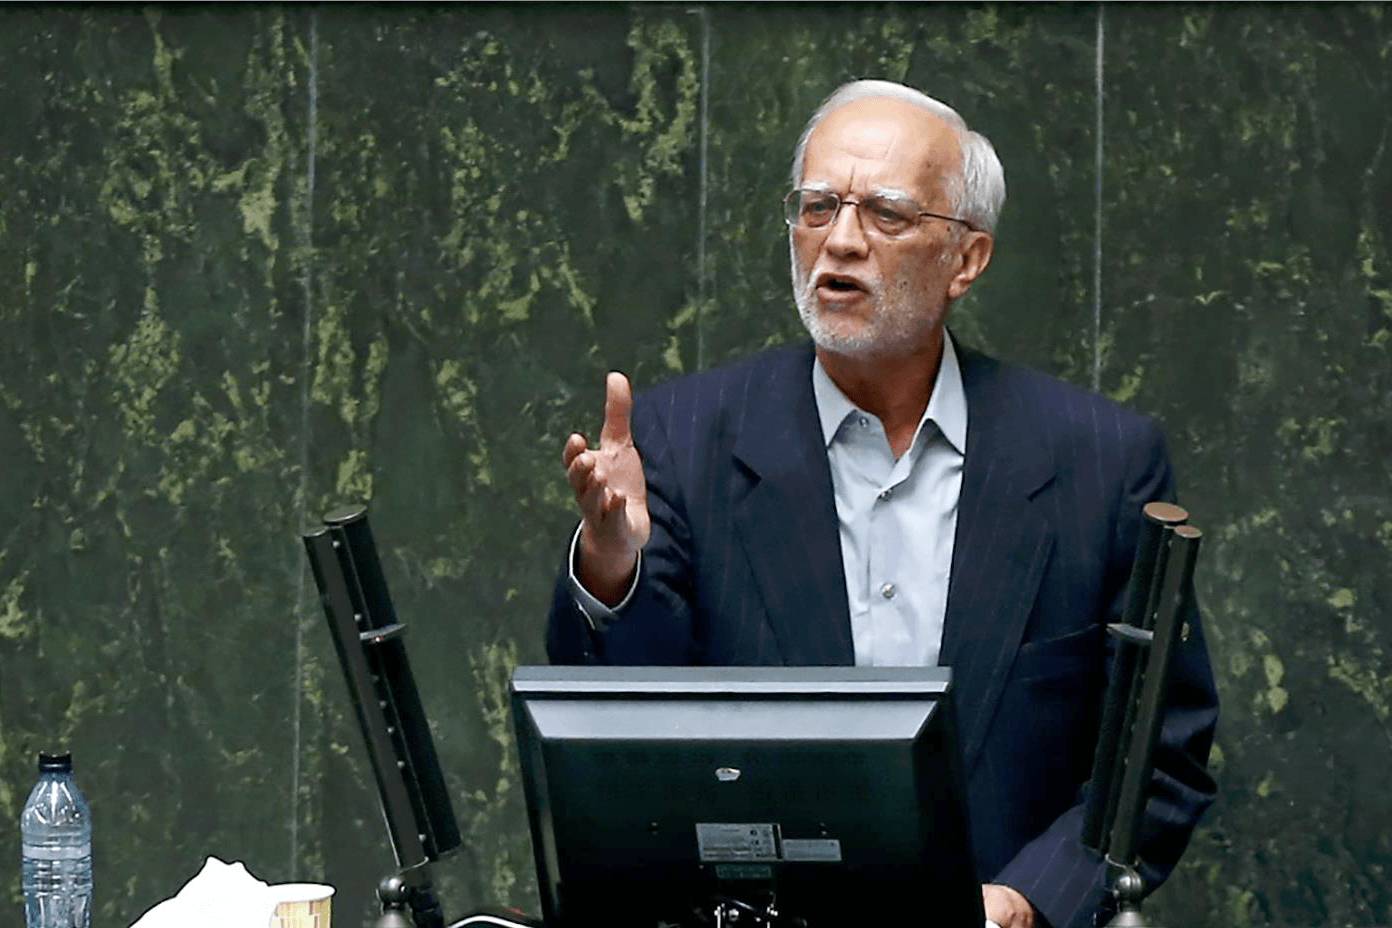 عبدالرضا هاشم‌زایی: به شورای نگهبان تبریک می گویم/ اگر قرار است مجلسِ در رأس امور نداشته باشیم یک پارلمان مشورتی با اعضای انقلابی تشکیل دهید